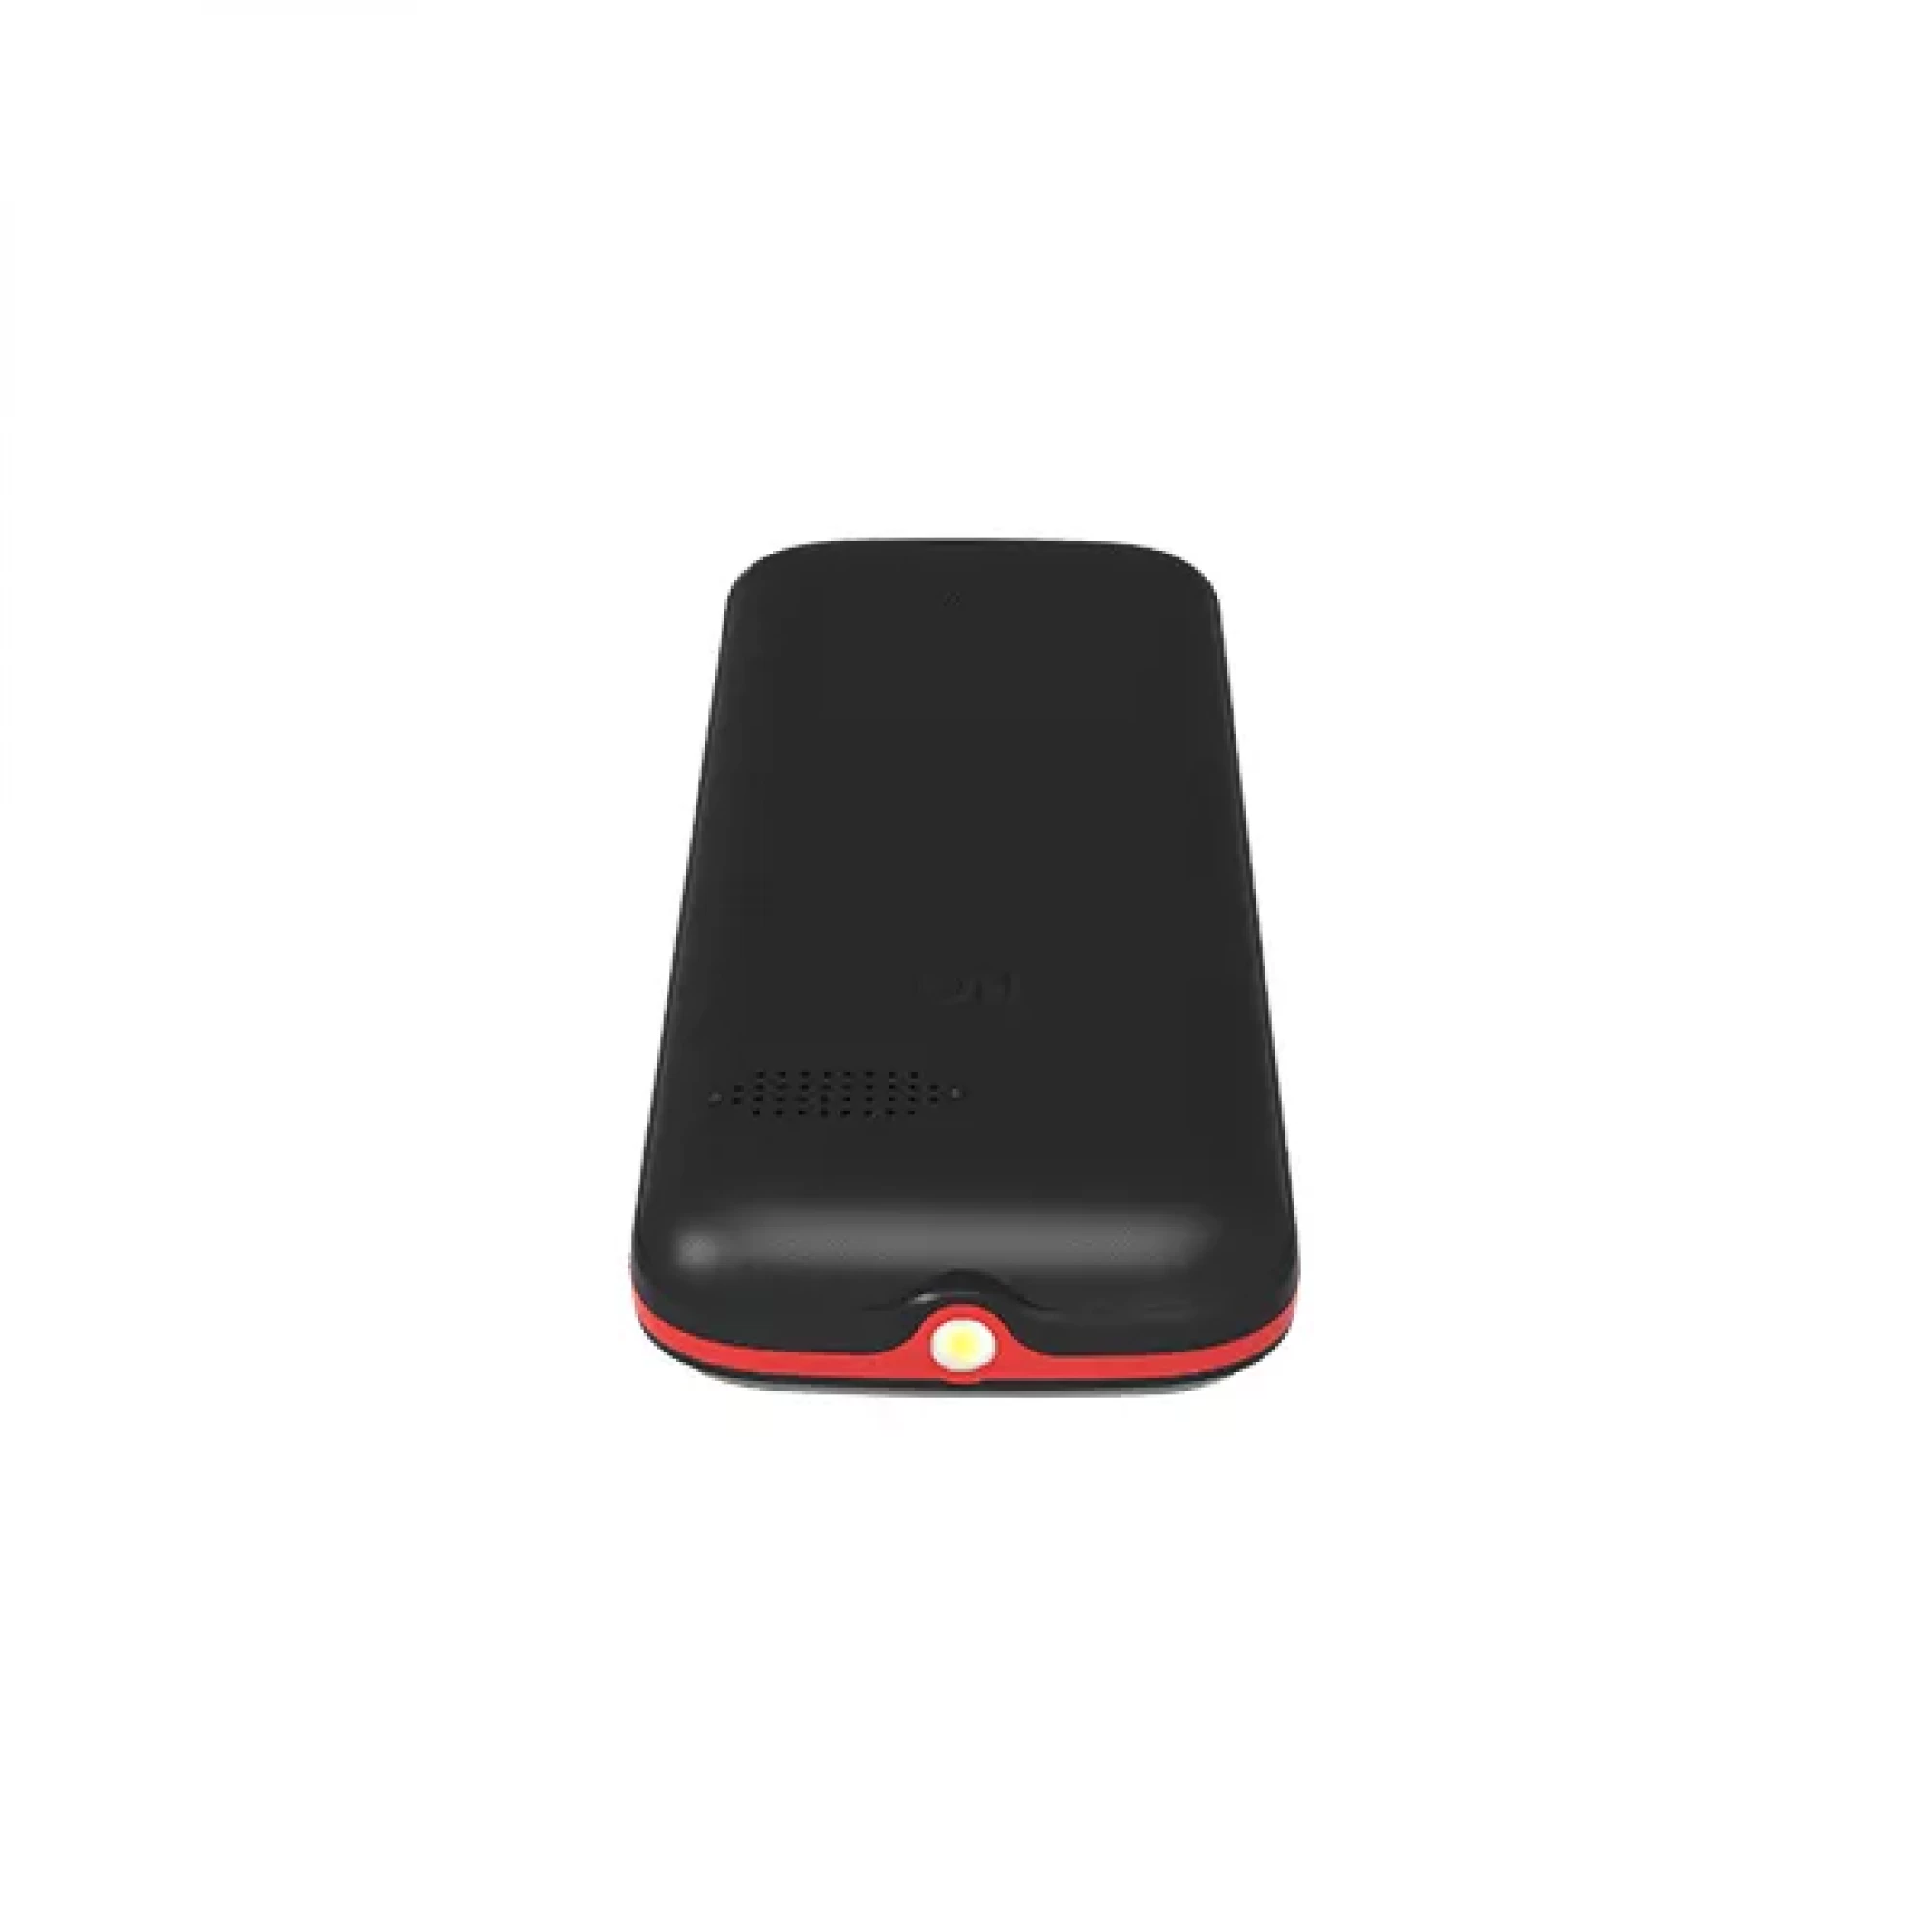 Мобильный телефон BQ BQ-2820 Step XL+ (черный/красный)